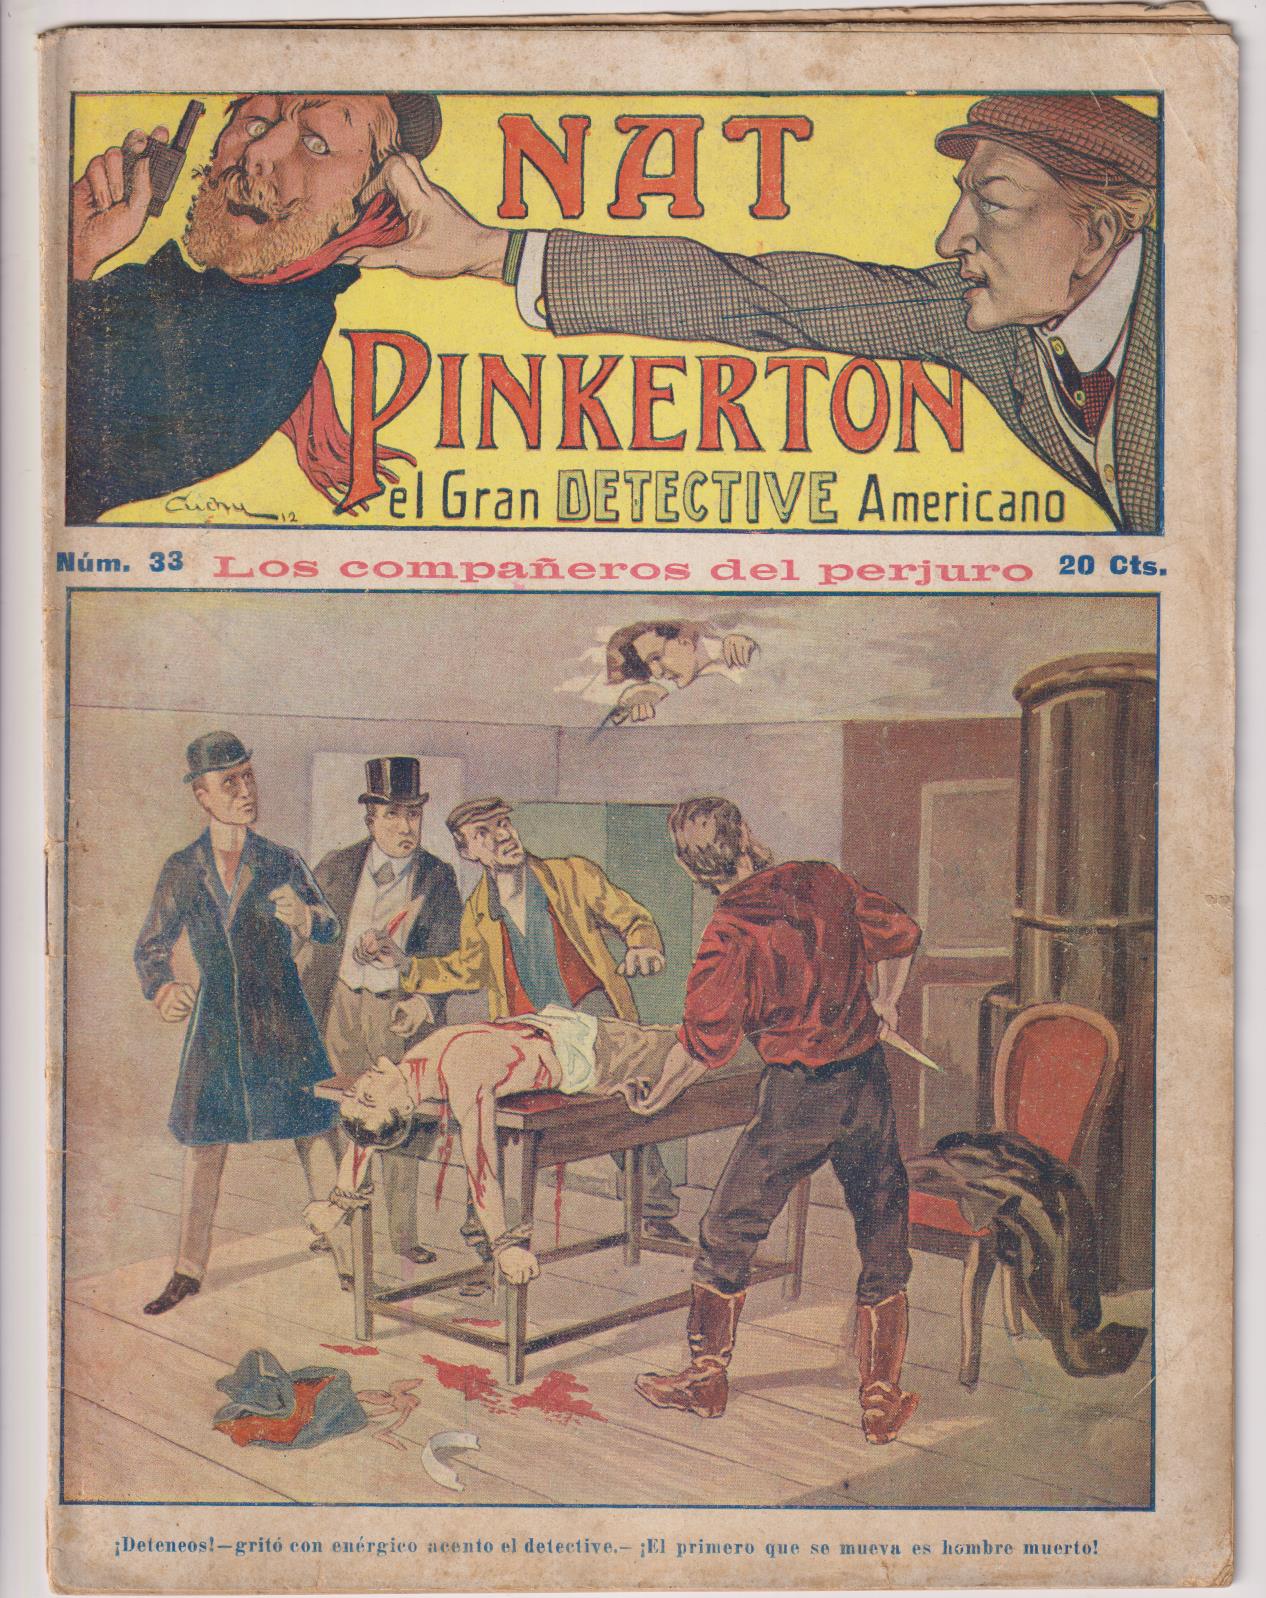 Nat Pinkerton. El Gran detective Americano nº 33. Seguí. (26x21) 31 p.p. con imágenes